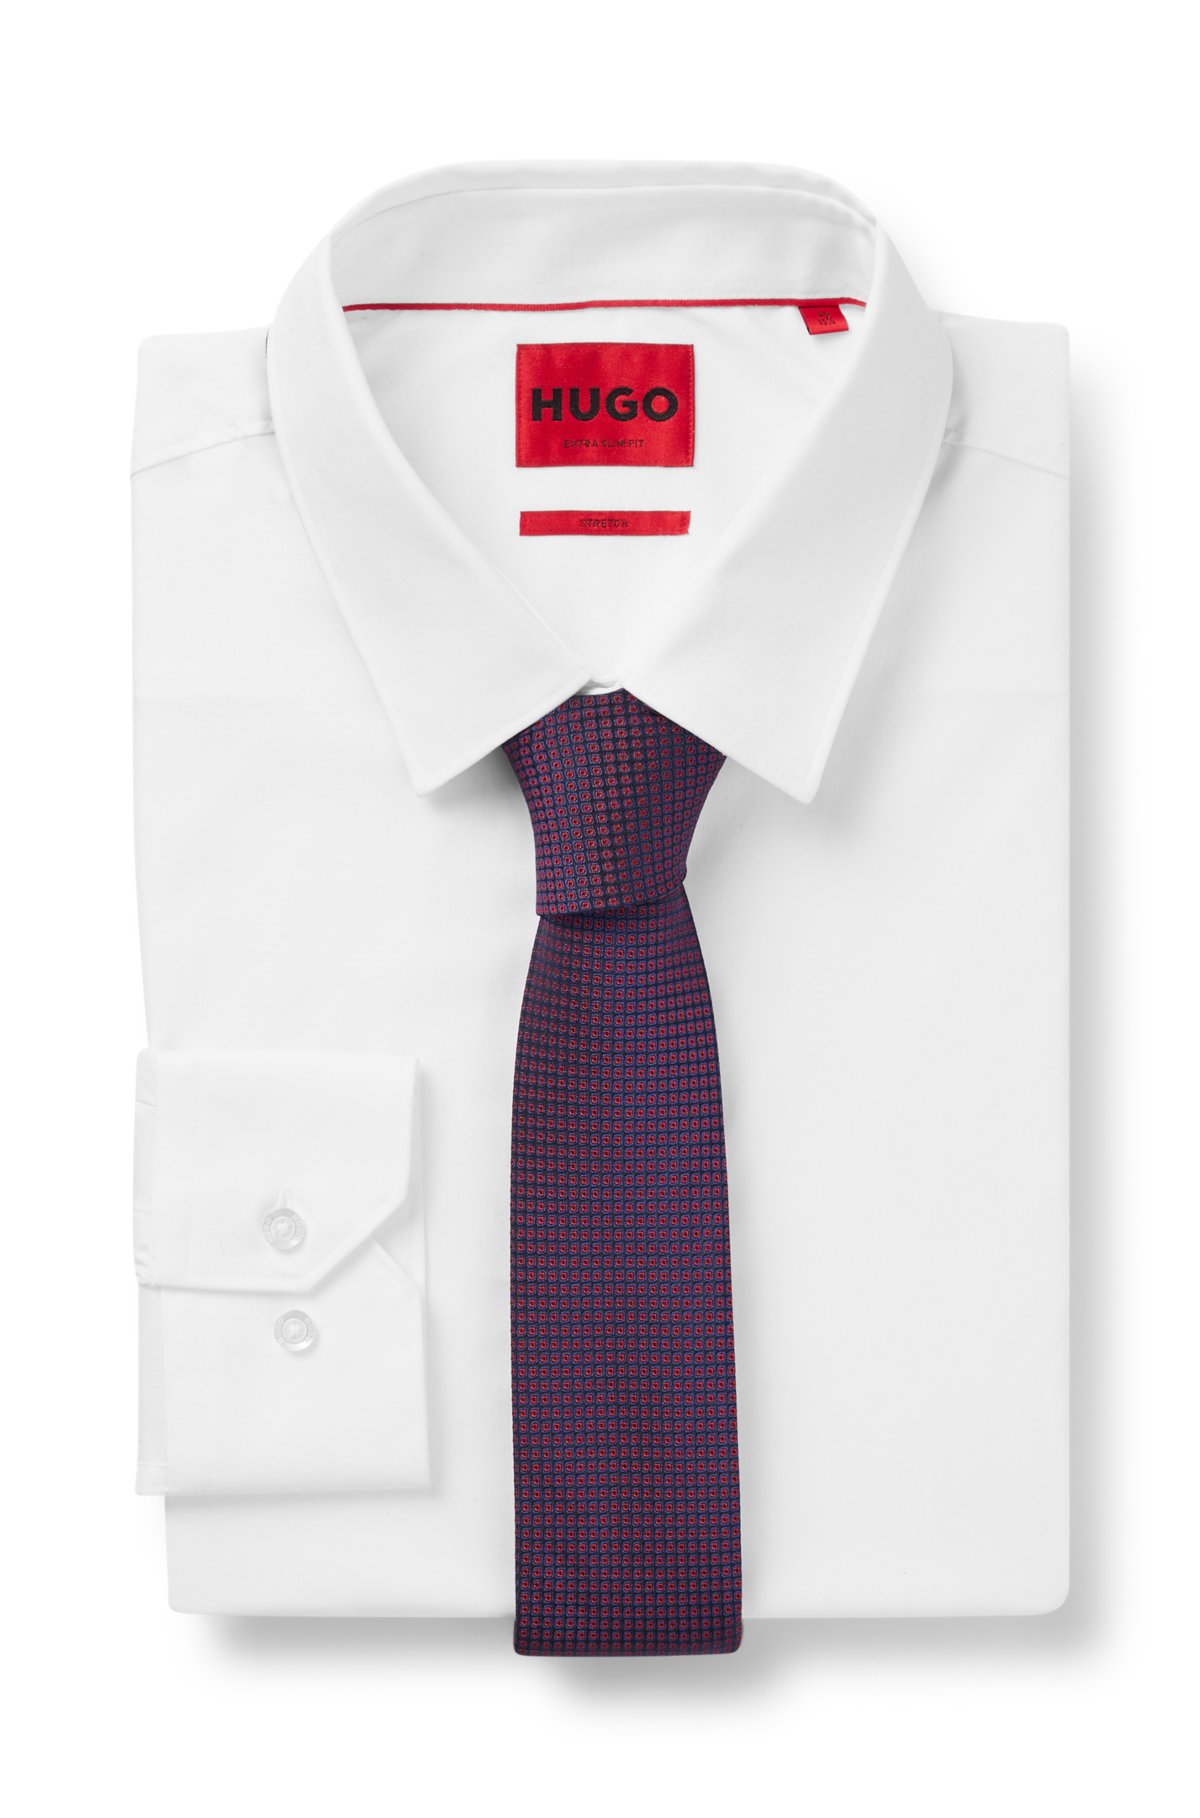 HUGO - シルクジャカード ネクタイ スクエアドットパターン